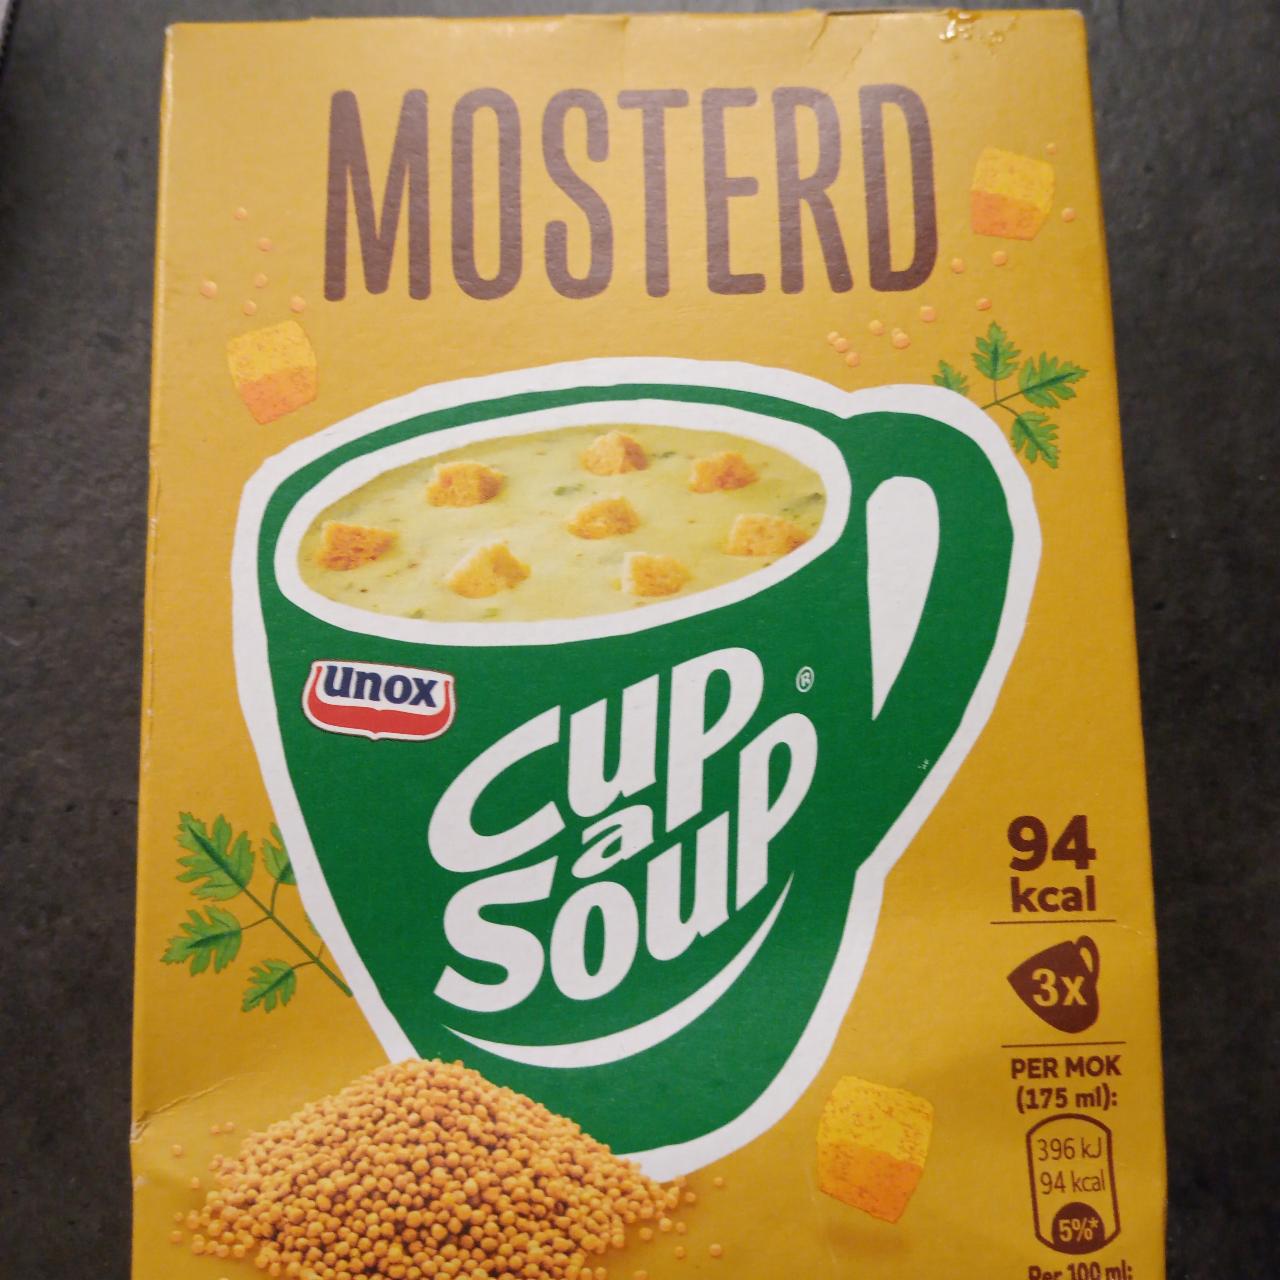 Fotografie - Cup a Soup Mosters Unox